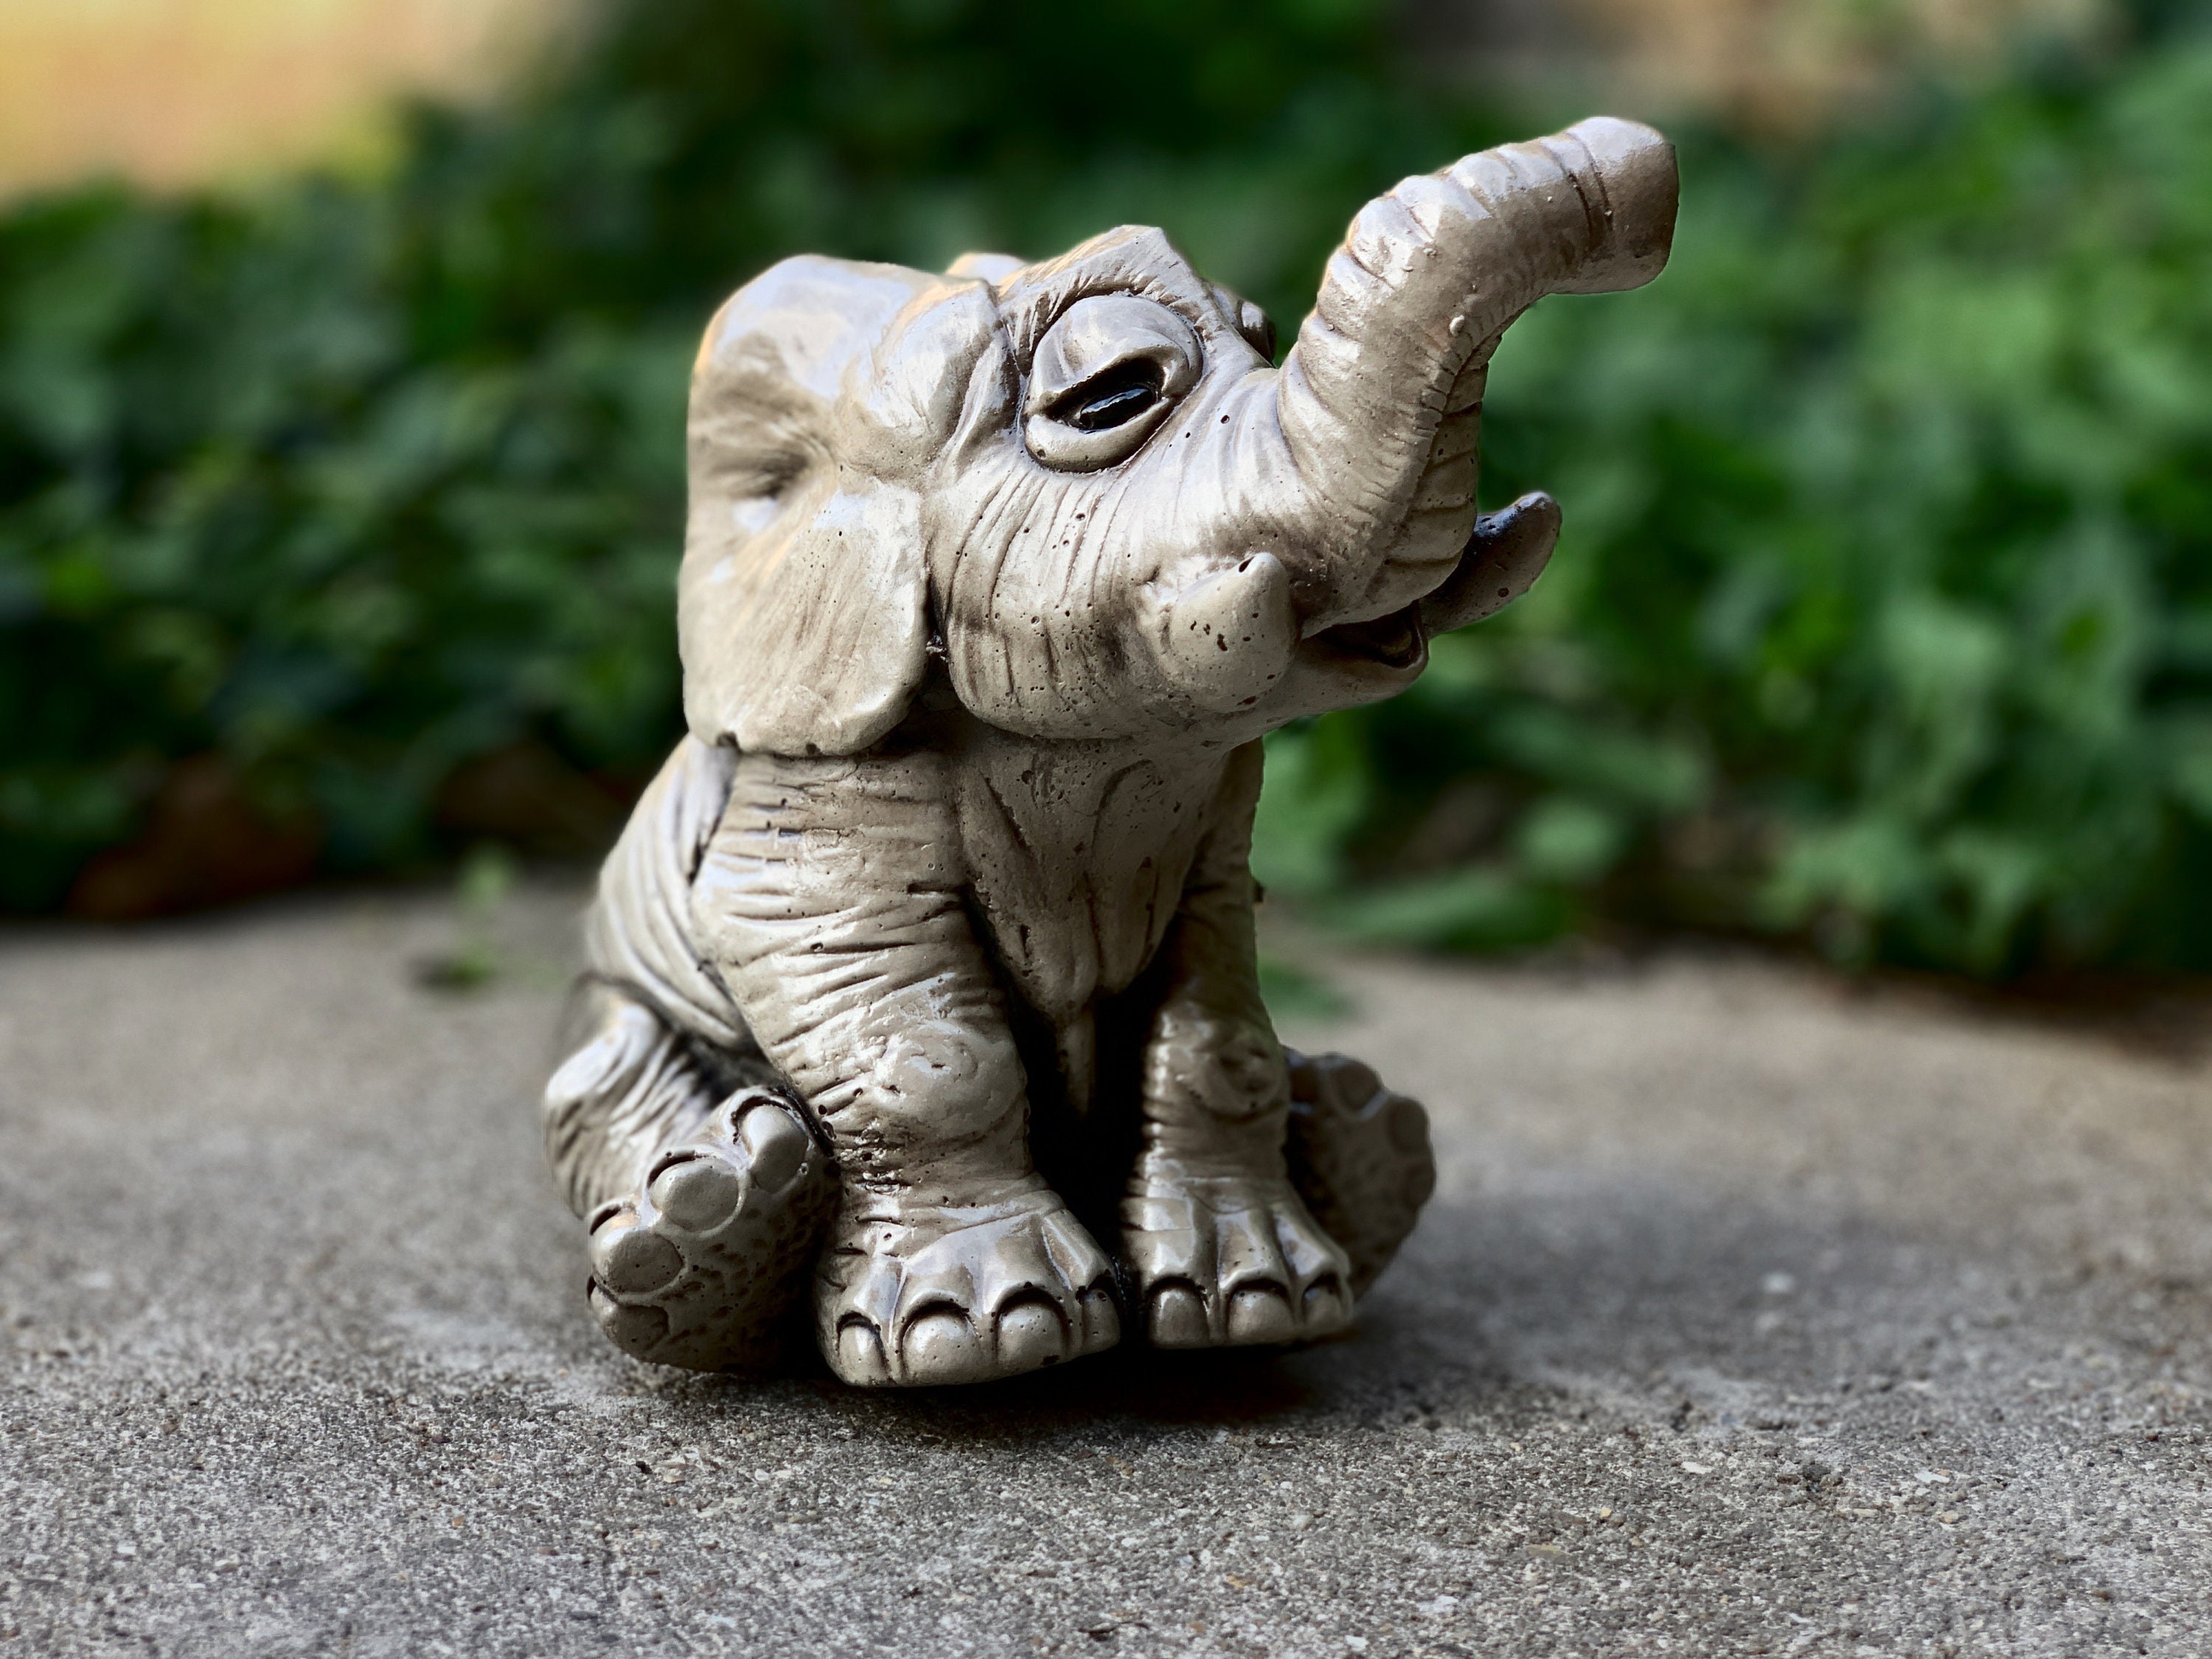 Despues del gato chino… El elefante de la suerte: Ganesha!